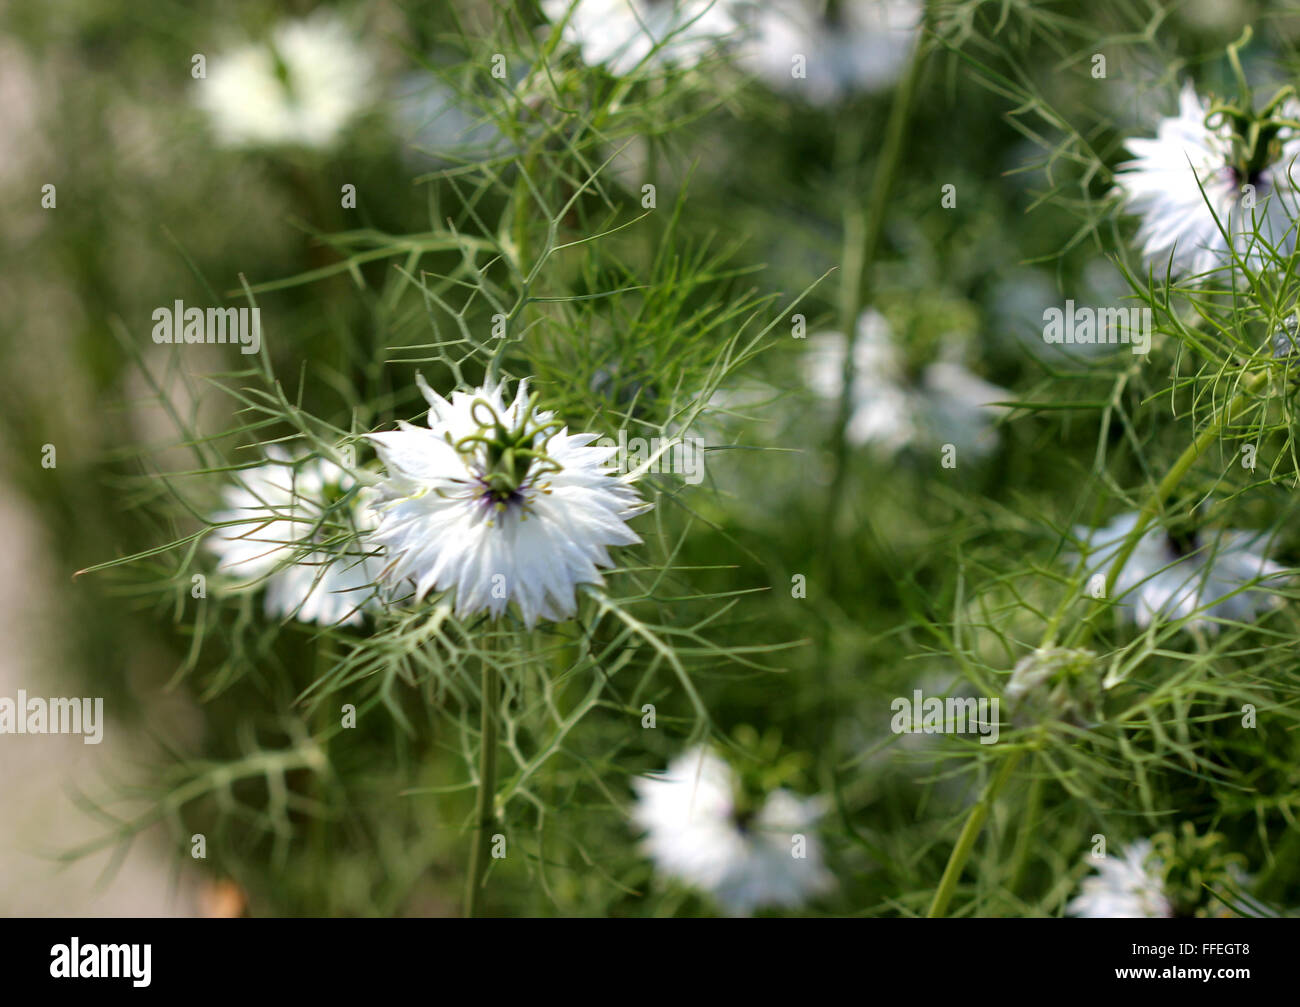 Nigella Damascena, Love-in-a-mist, dekorative Kraut mit fein seziert Blätter, fein seziert Blätter und weiße Blüten Stockfoto